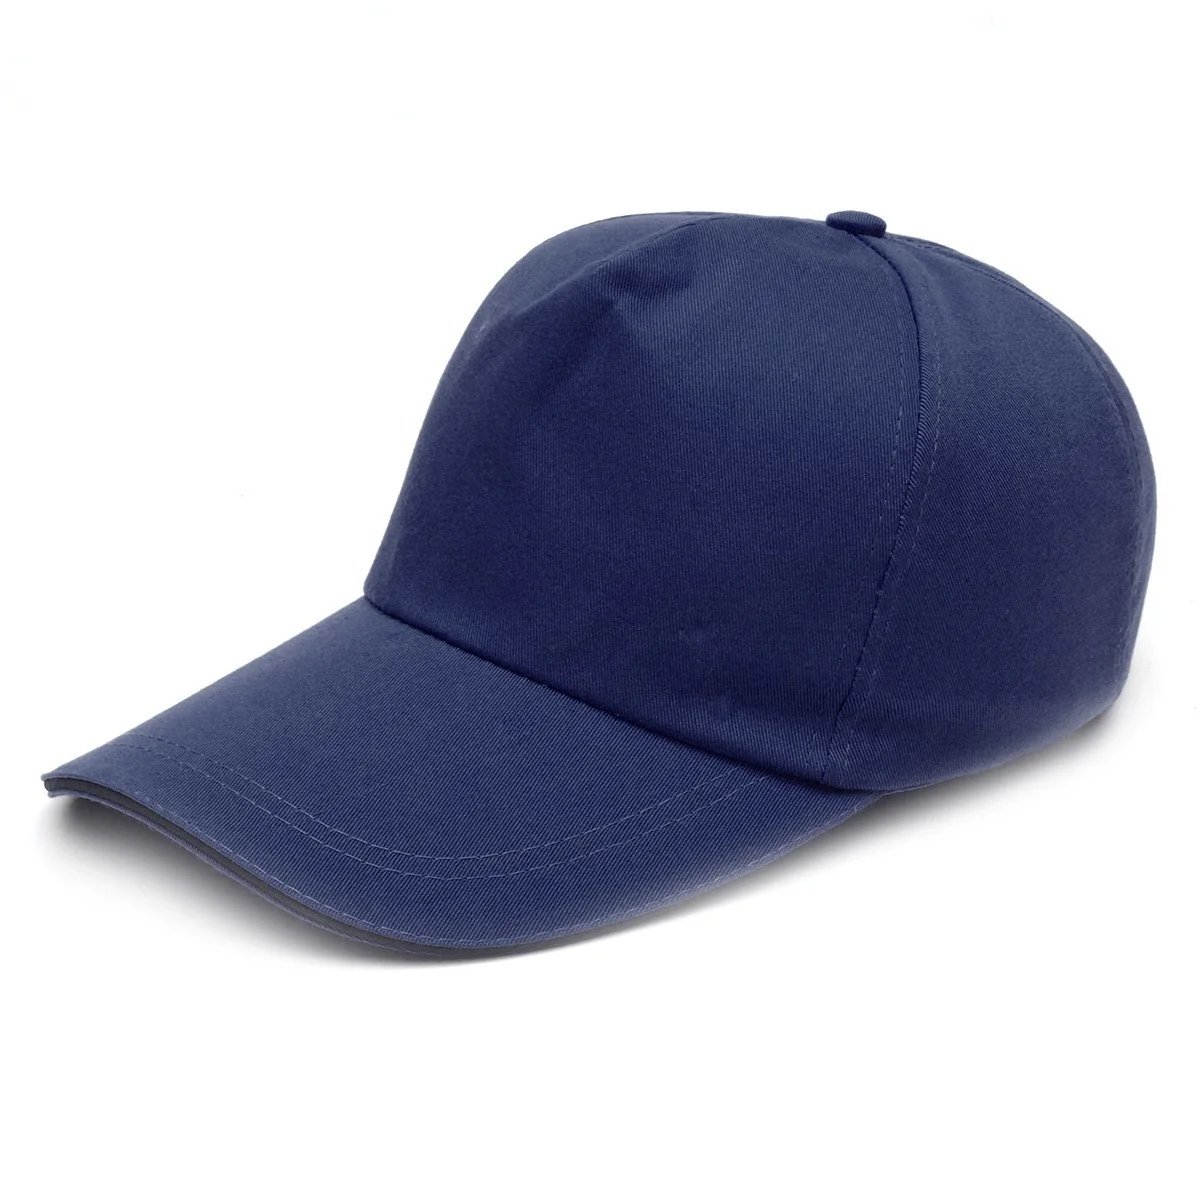 Tapa golpe estilo de béisbol Sombrero duro Seguridad Protección de la cabeza ligera trabajo de protección de seguridad casco de seguridad